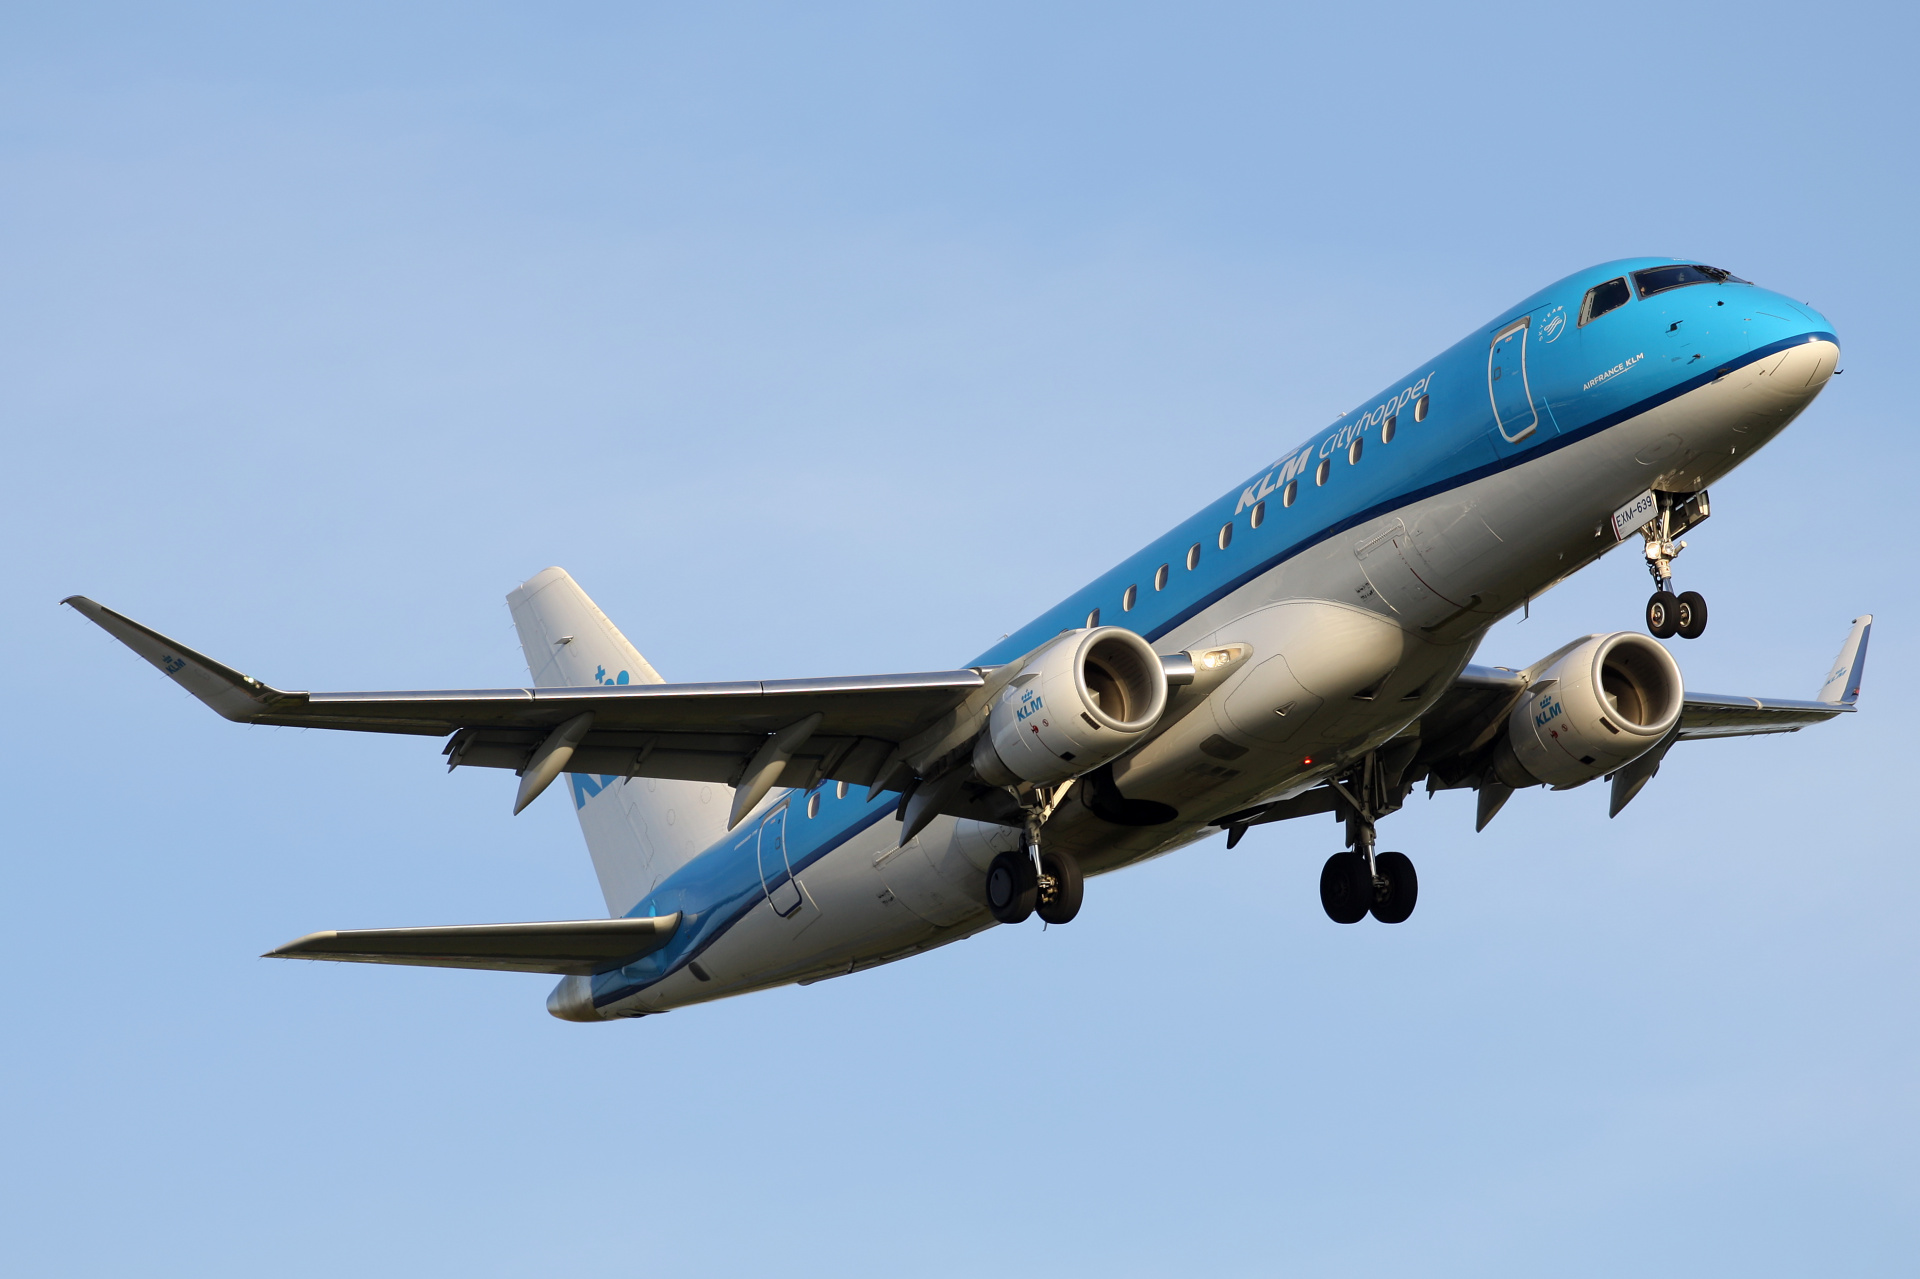 PH-EXM (Aircraft » Schiphol Spotting » Embraer E175 » KLM Cityhopper)